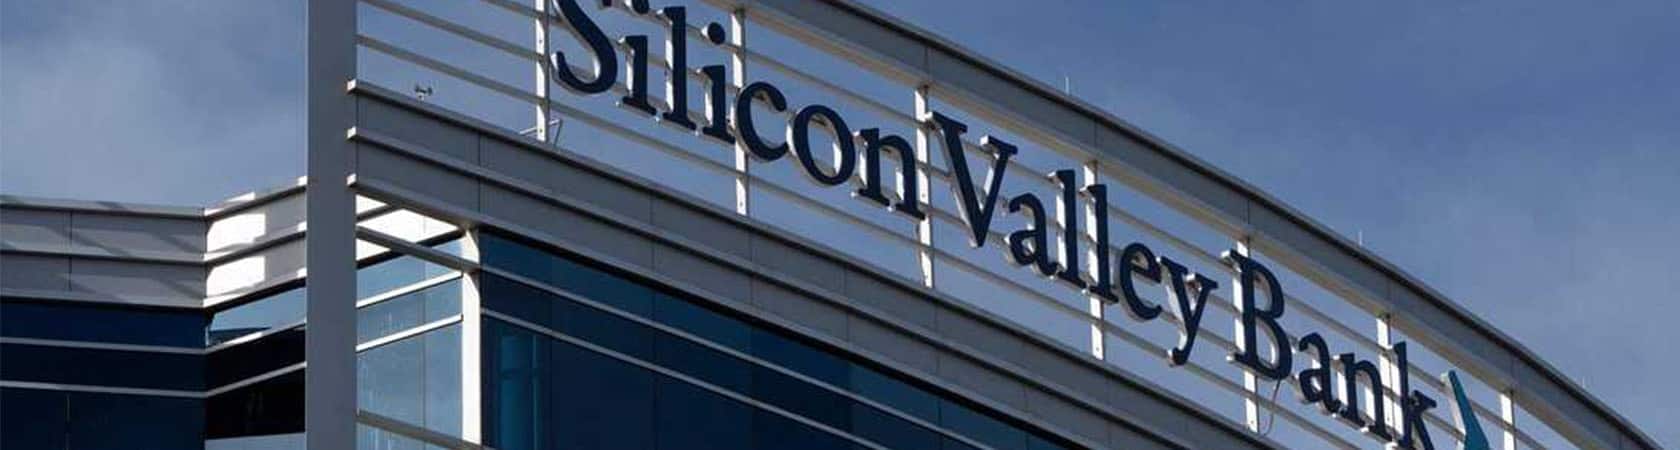 Silicon Valley Bank (SVB) building